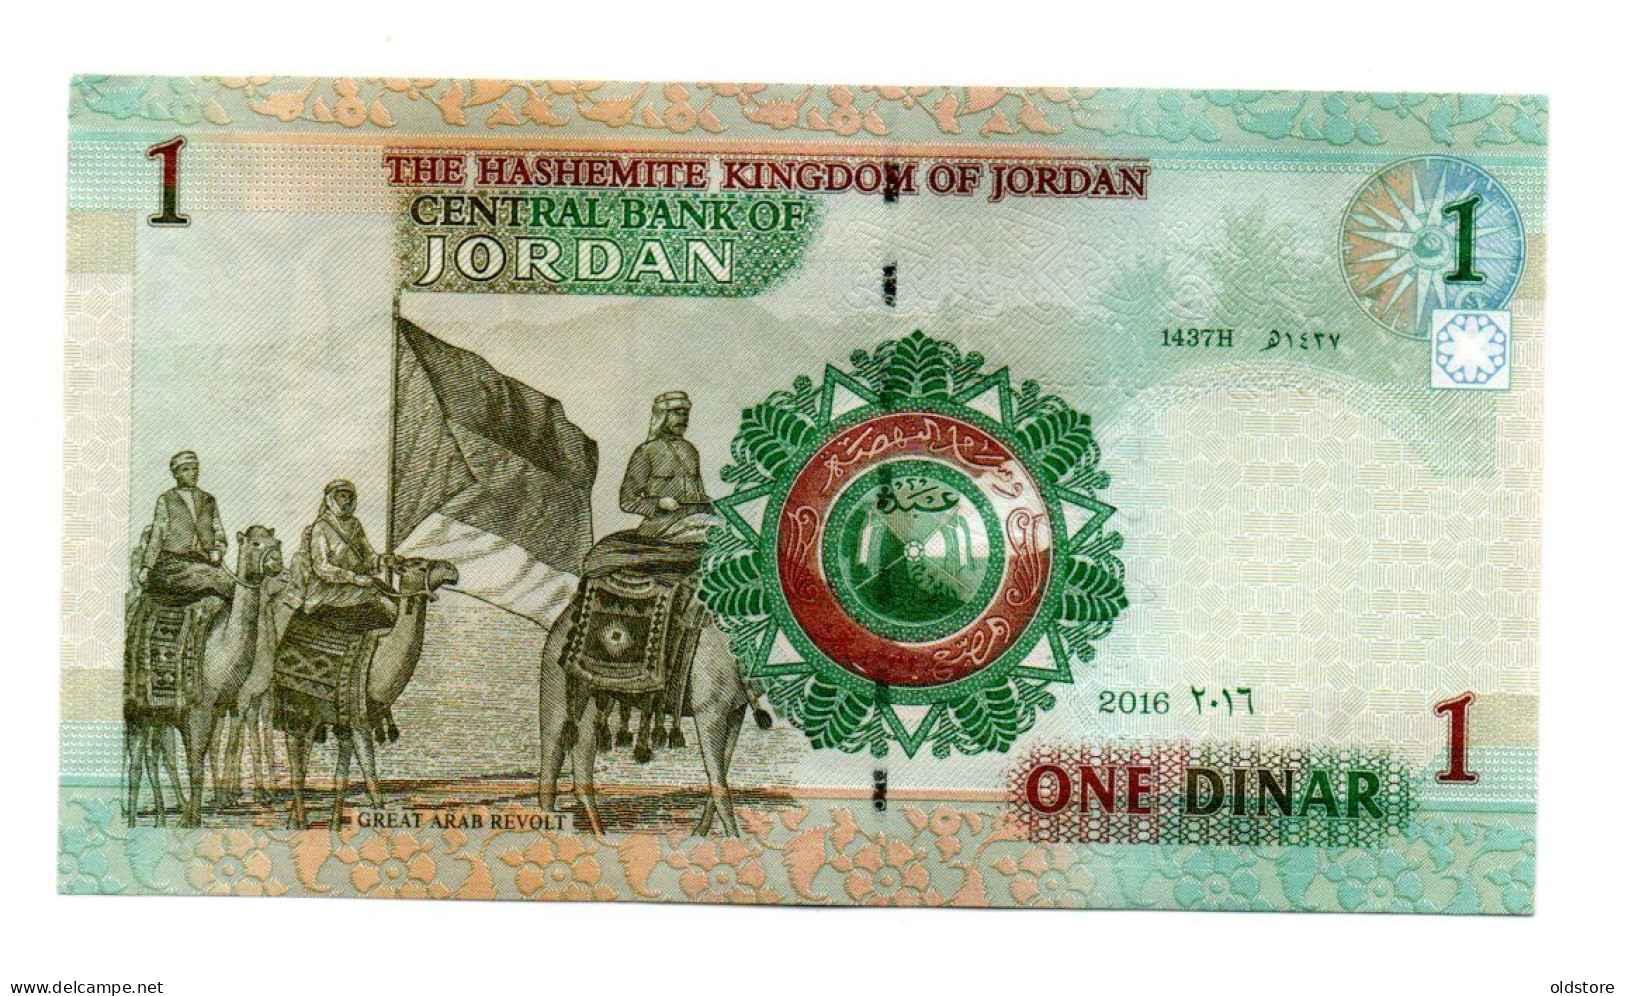 Jordan Banknotes -  10 Rupees -  2016 - Low Serial Number ( 000016 ) - UNC - Jordania